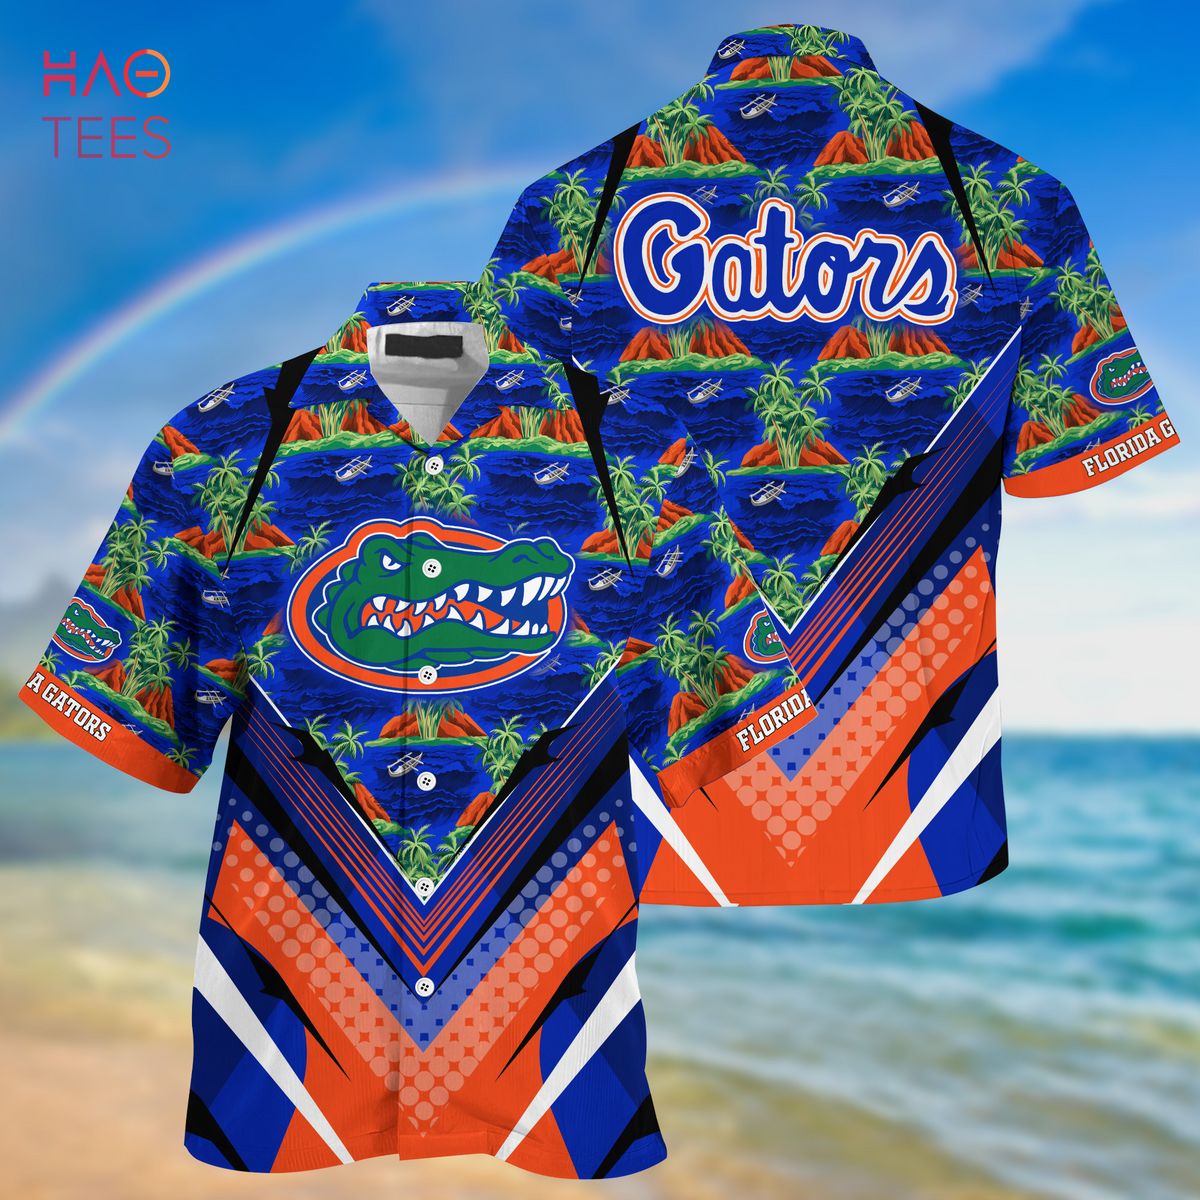 [TRENDING] Florida Gators  Summer Hawaiian Shirt And Shorts, For Sports Fans This Season